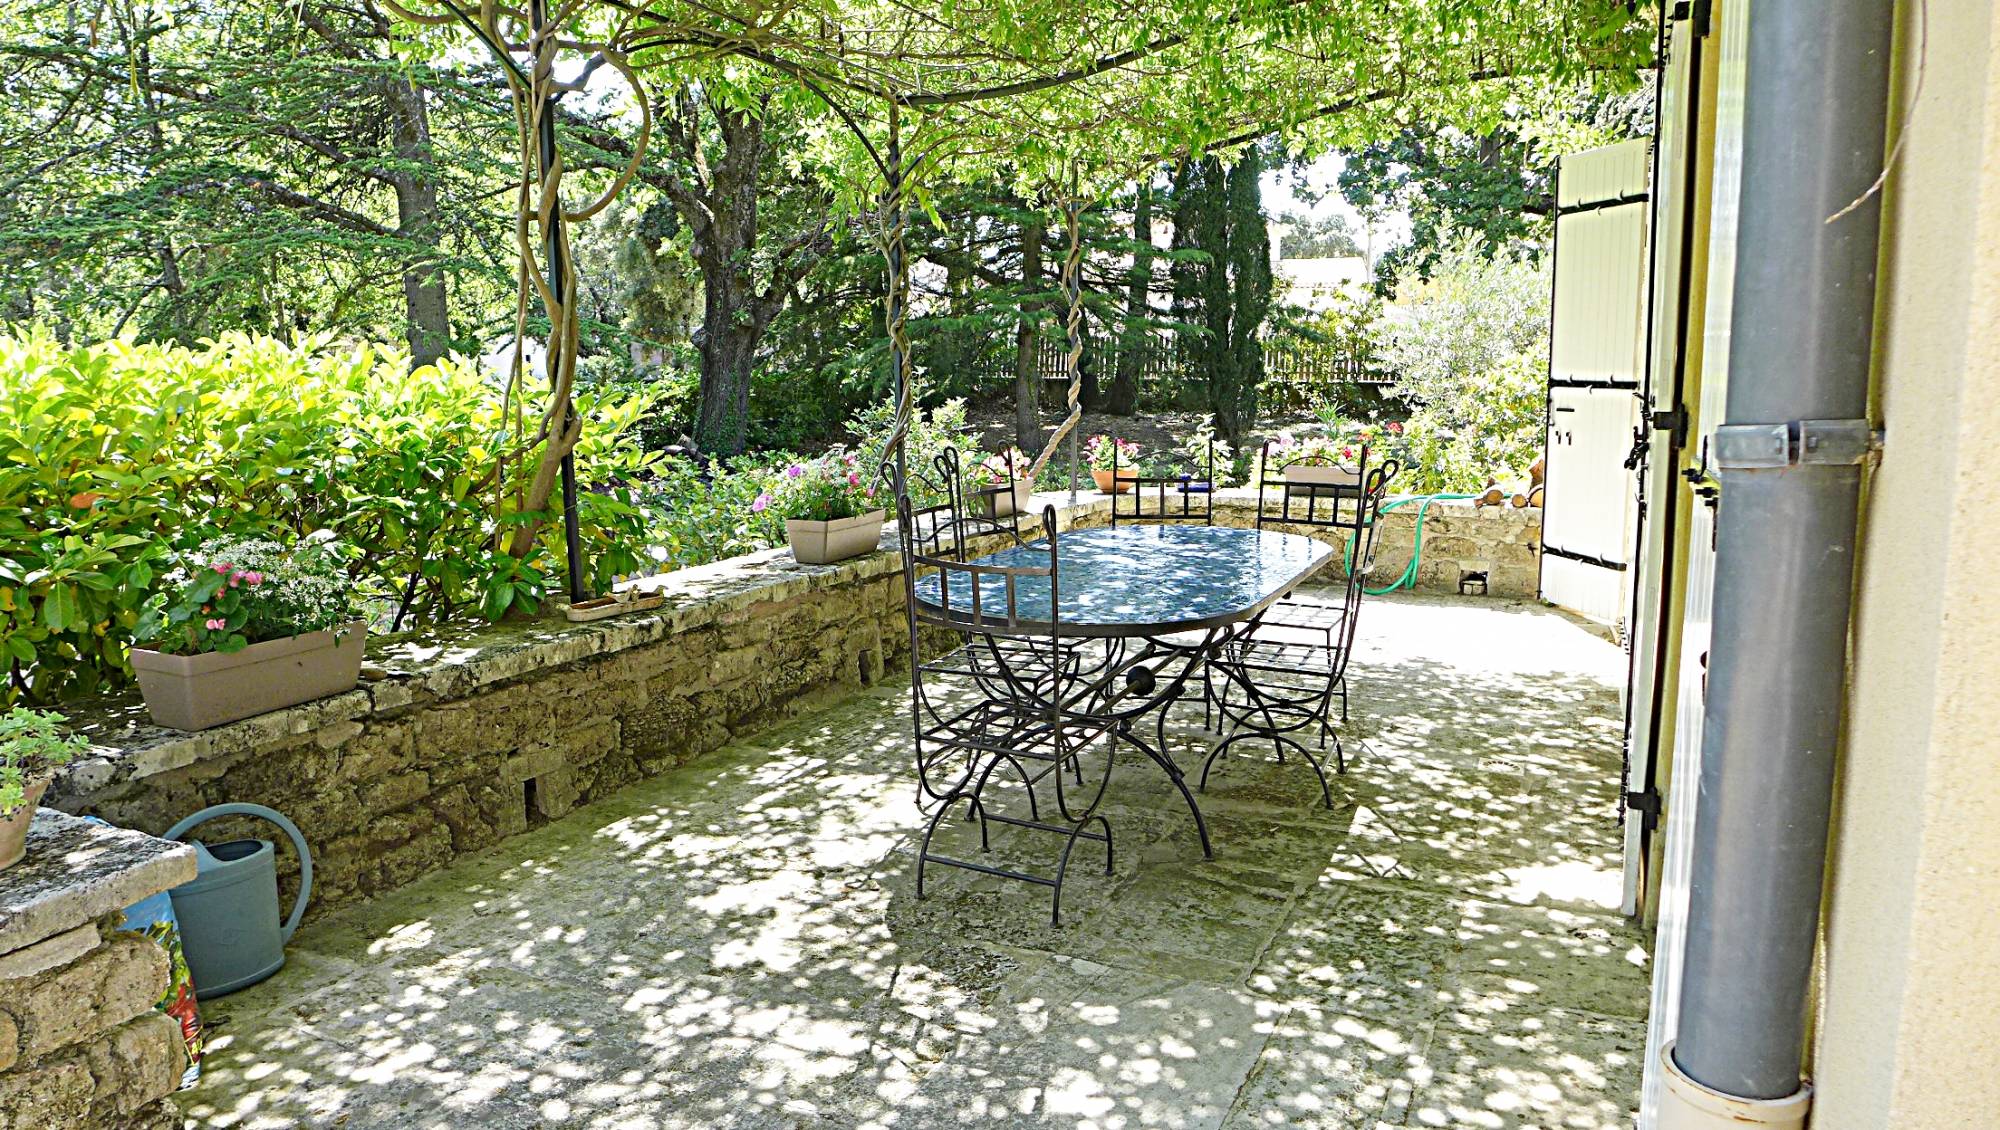 Villa à louer Drome Provençale, de plain pied accessible aux personnes à mobilité réduite, Piscine privative 